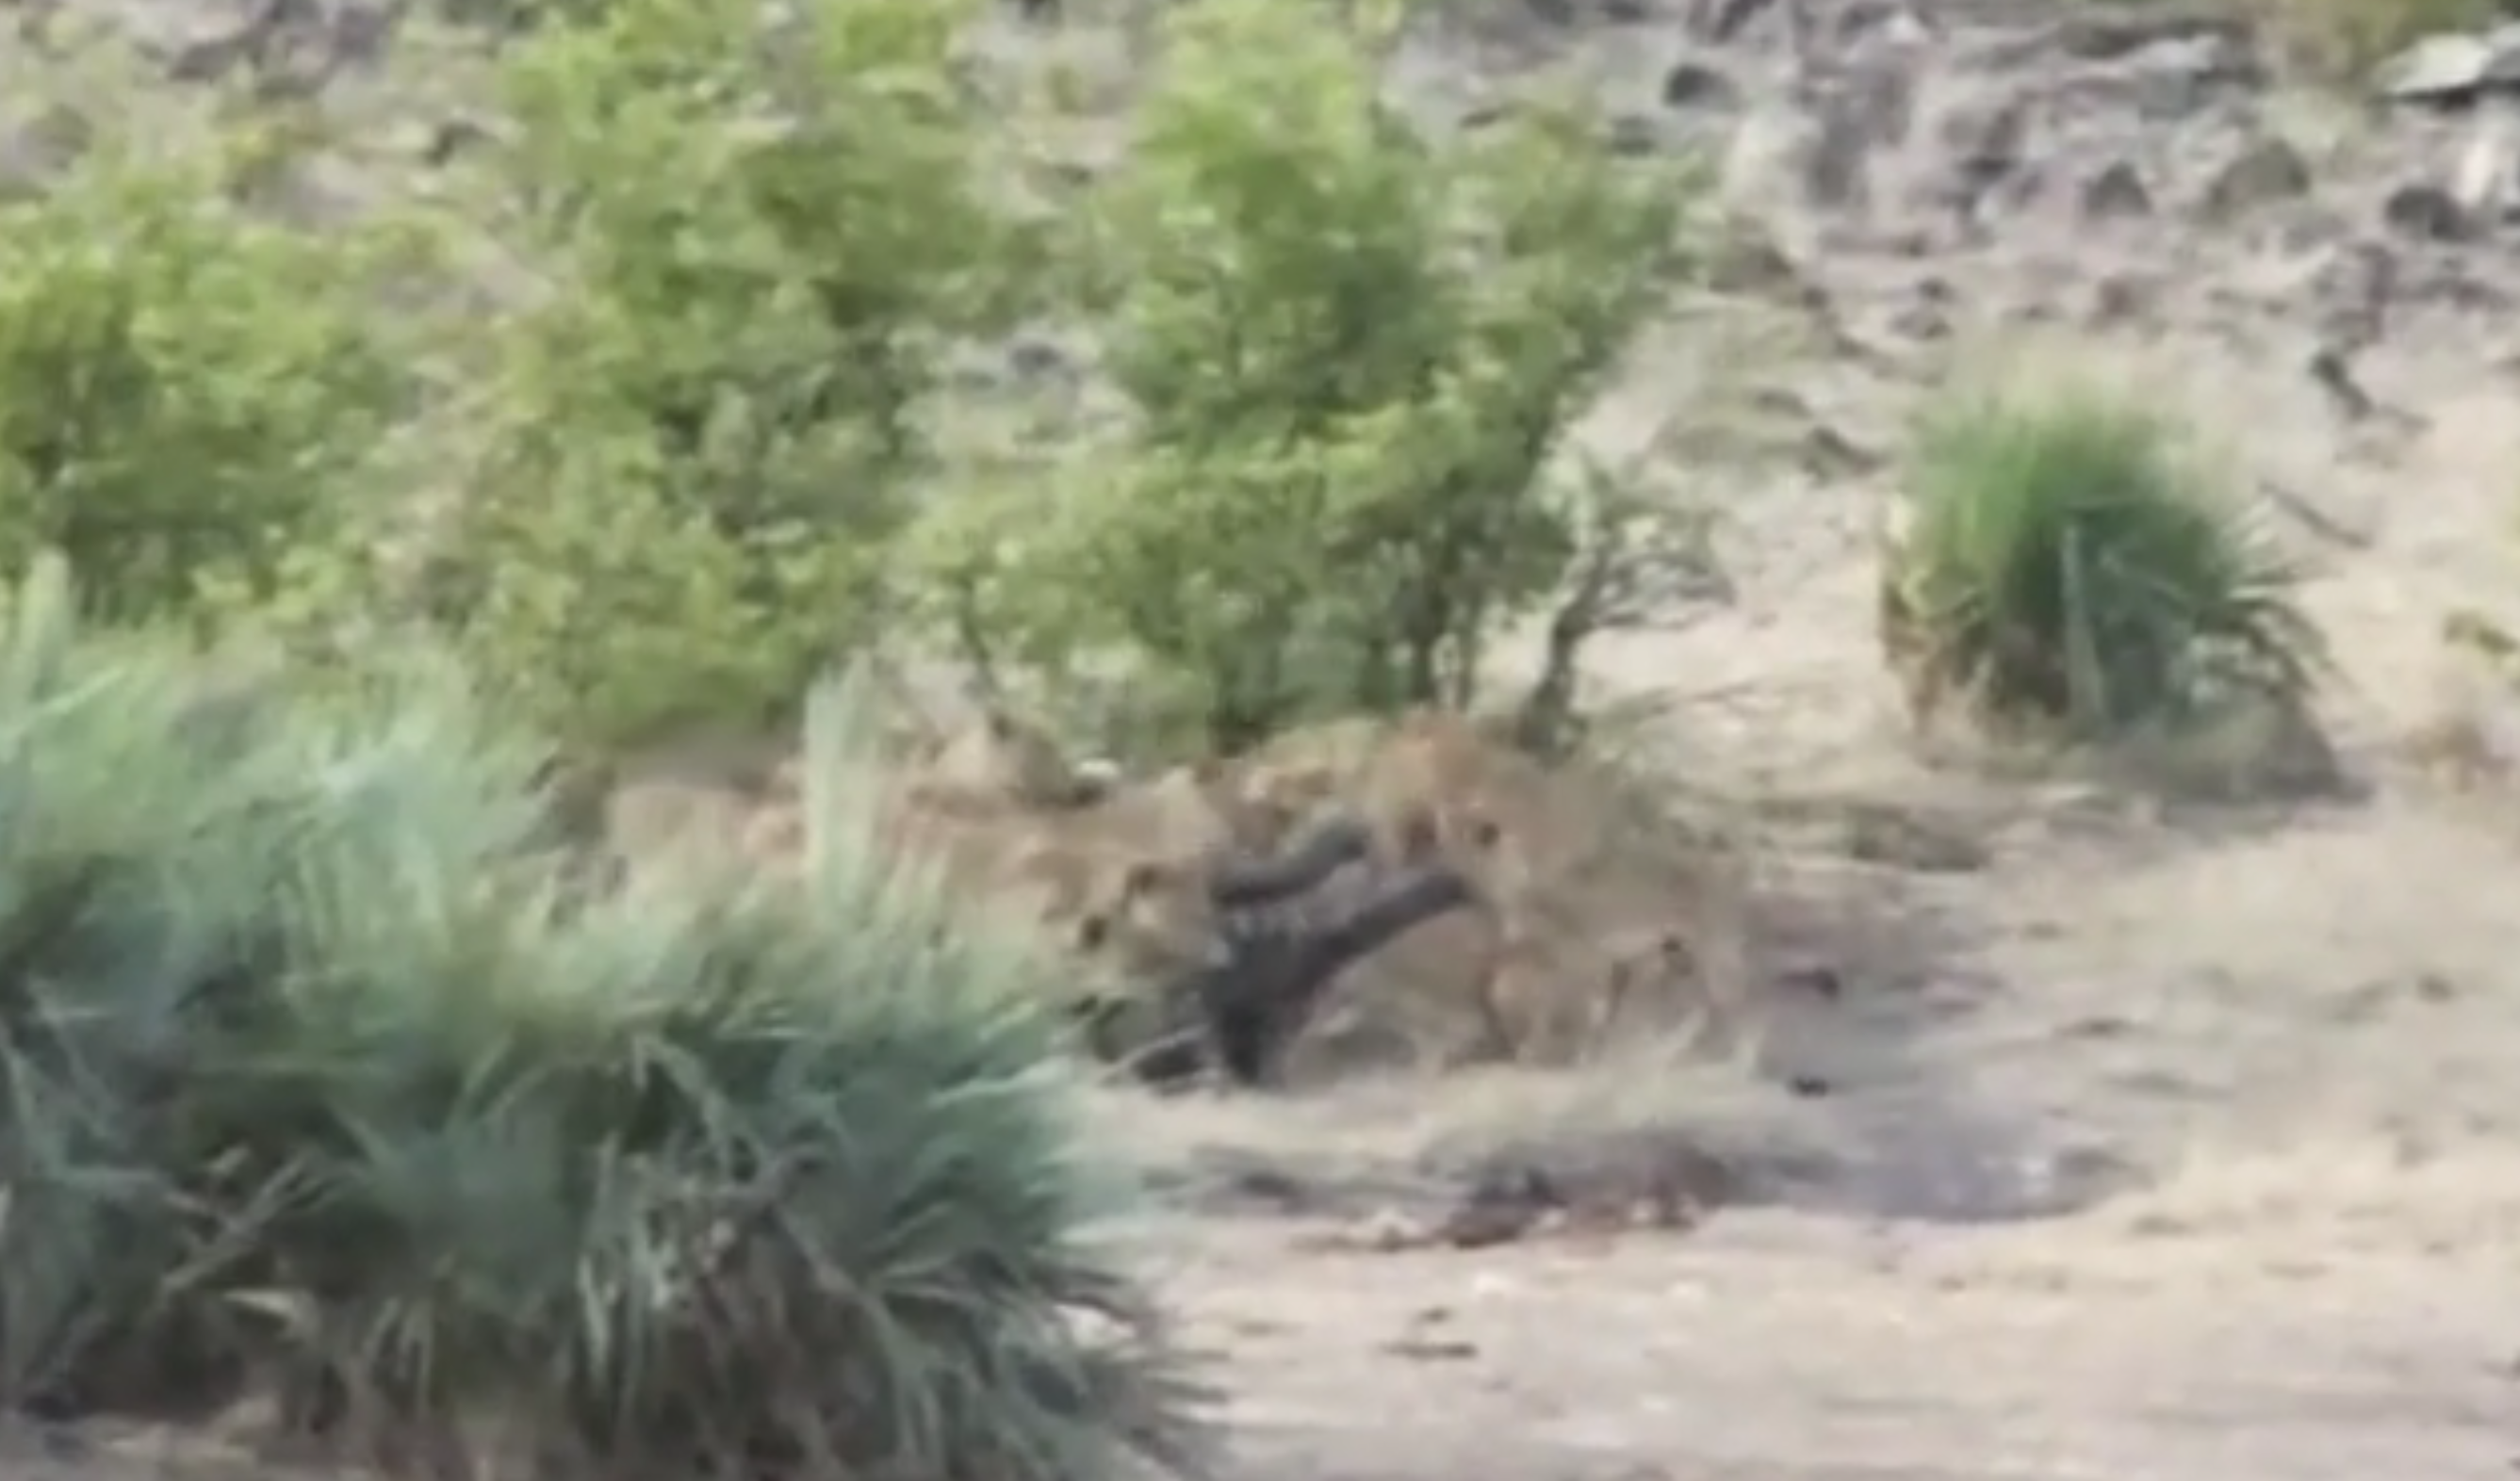 L'elefantino viene attaccato dai leoni: lo salvano i bufali [VIDEO]